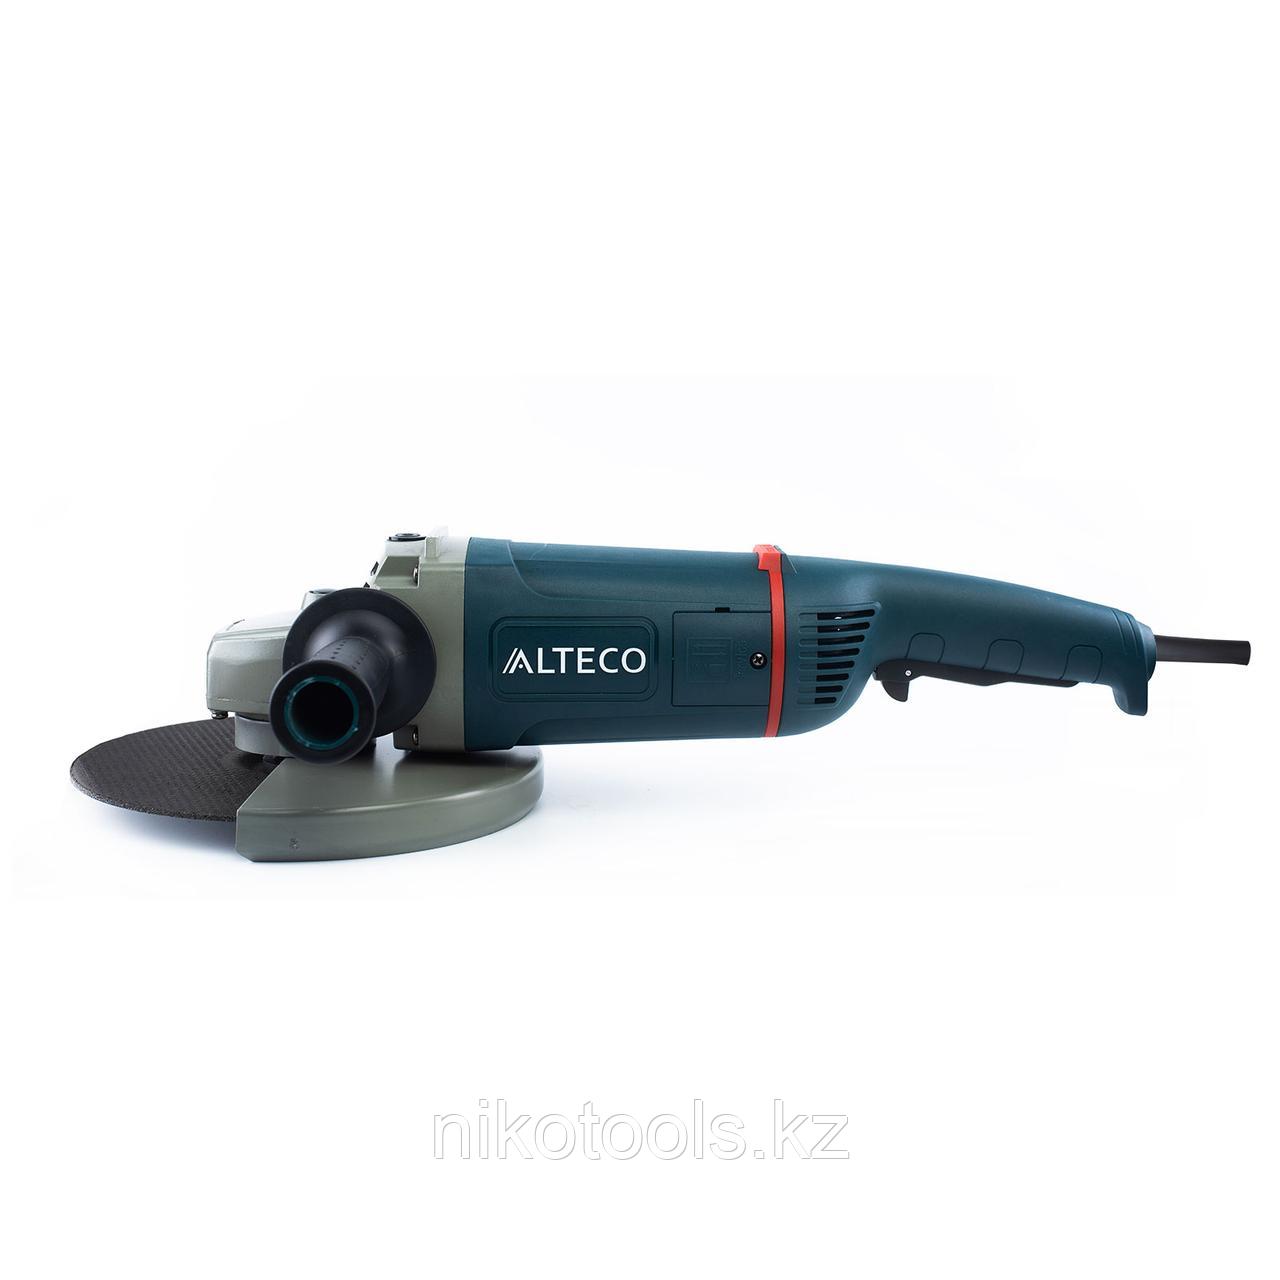 Угловая шлифмашина AG 2200-230 ALTECO